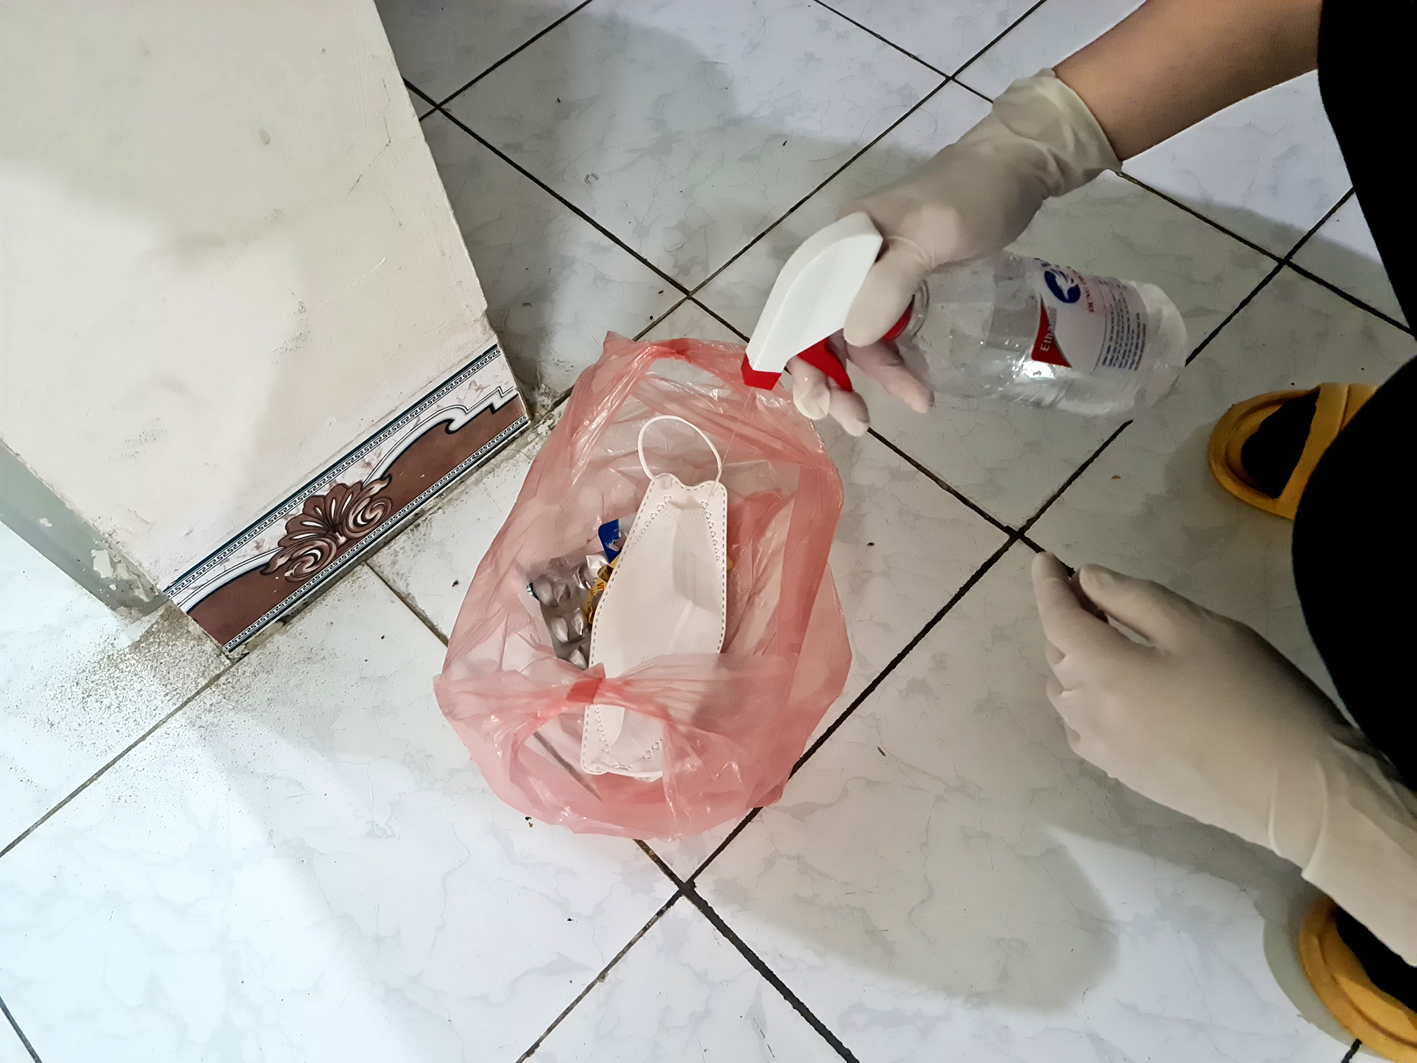 Bệnh nhân F0 quản lý tại nhà tự phân loại rác, xịt cồn khử khuẩn để phòng nguy cơ lây nhiễm